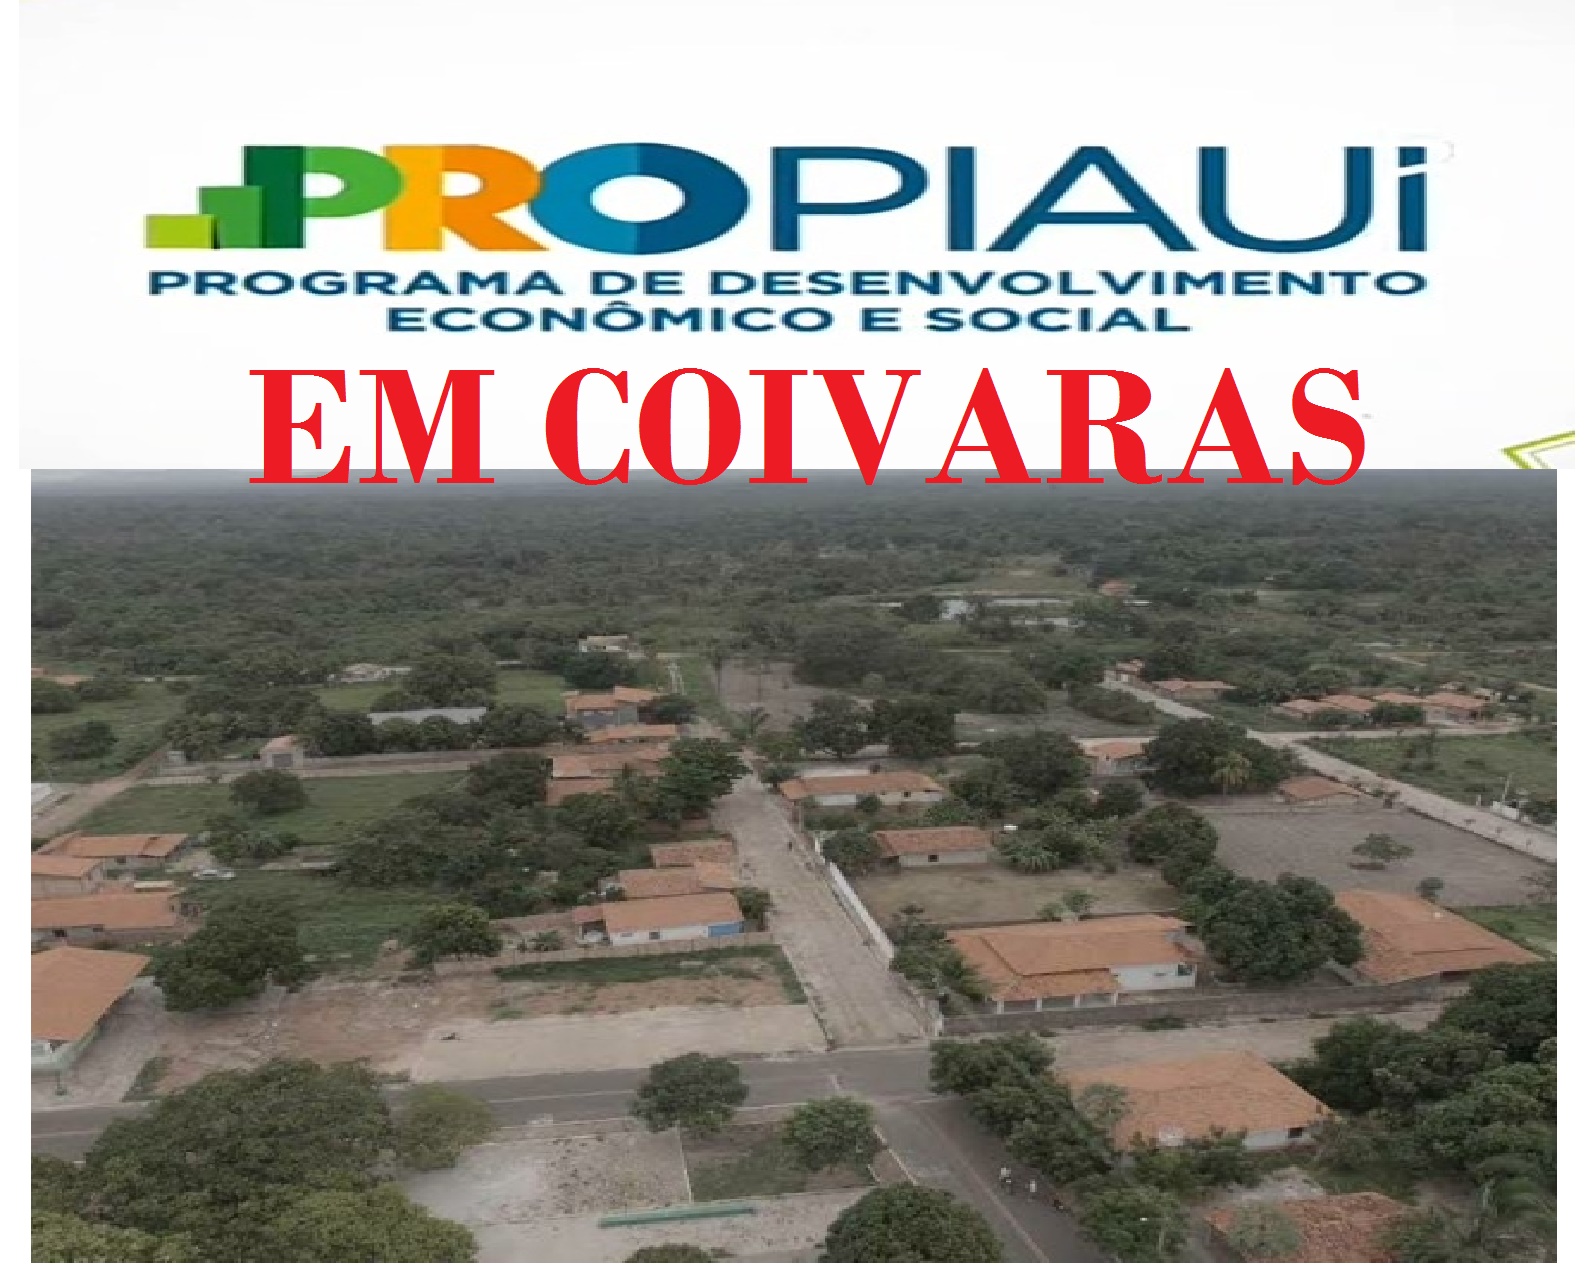 Pro Piauí em Coivaras: inauguração de obras e anunciará mais investimentos  - Imagem 1